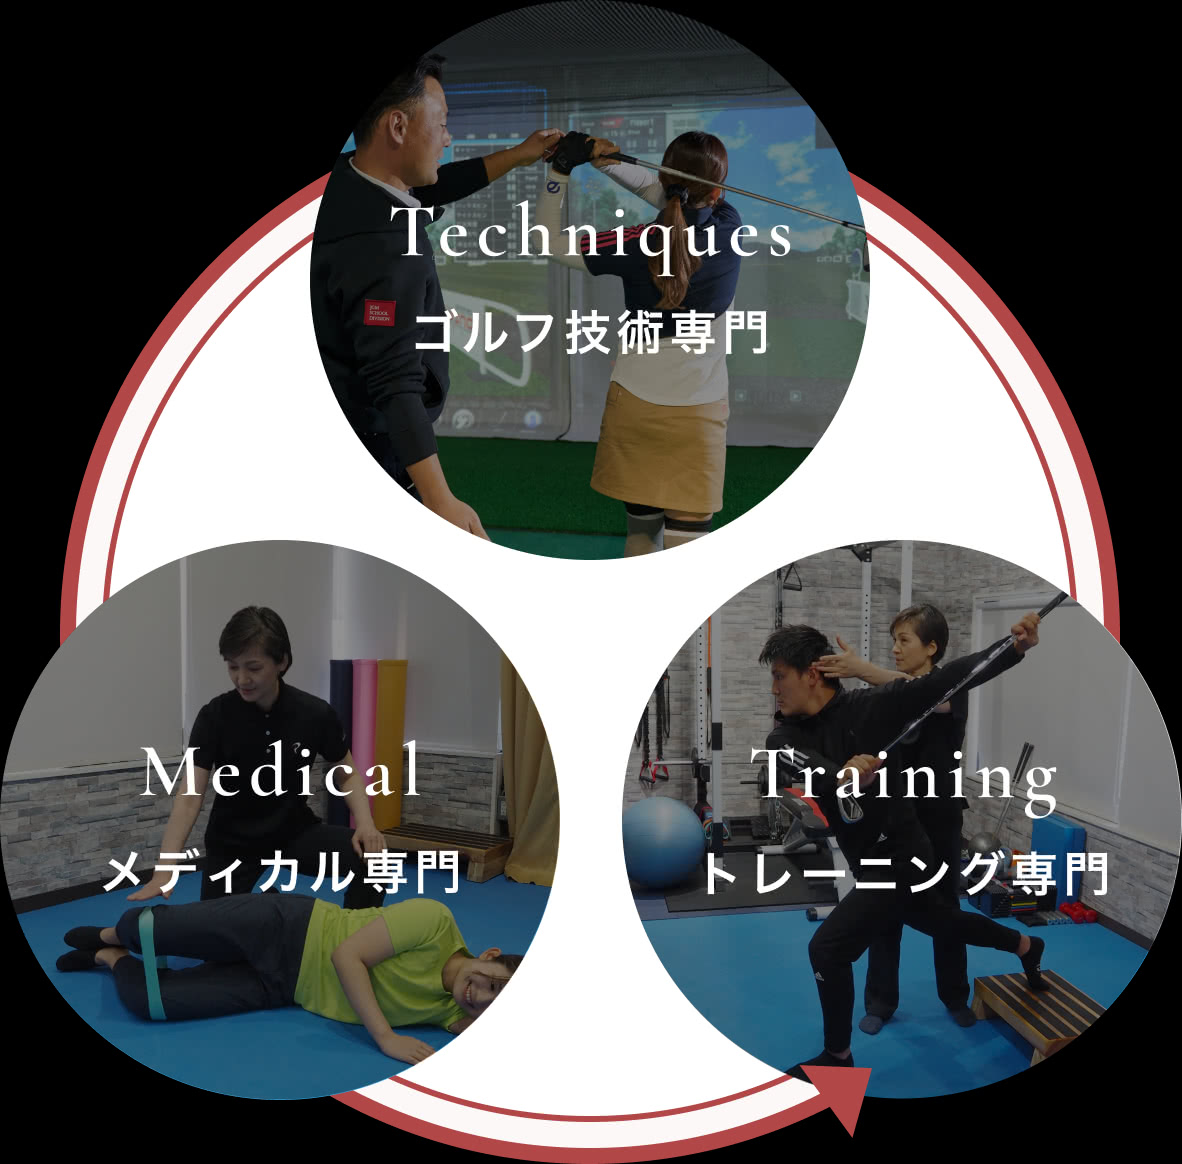 3つの分野の専門家によるトレーニングの好循環を示す画像